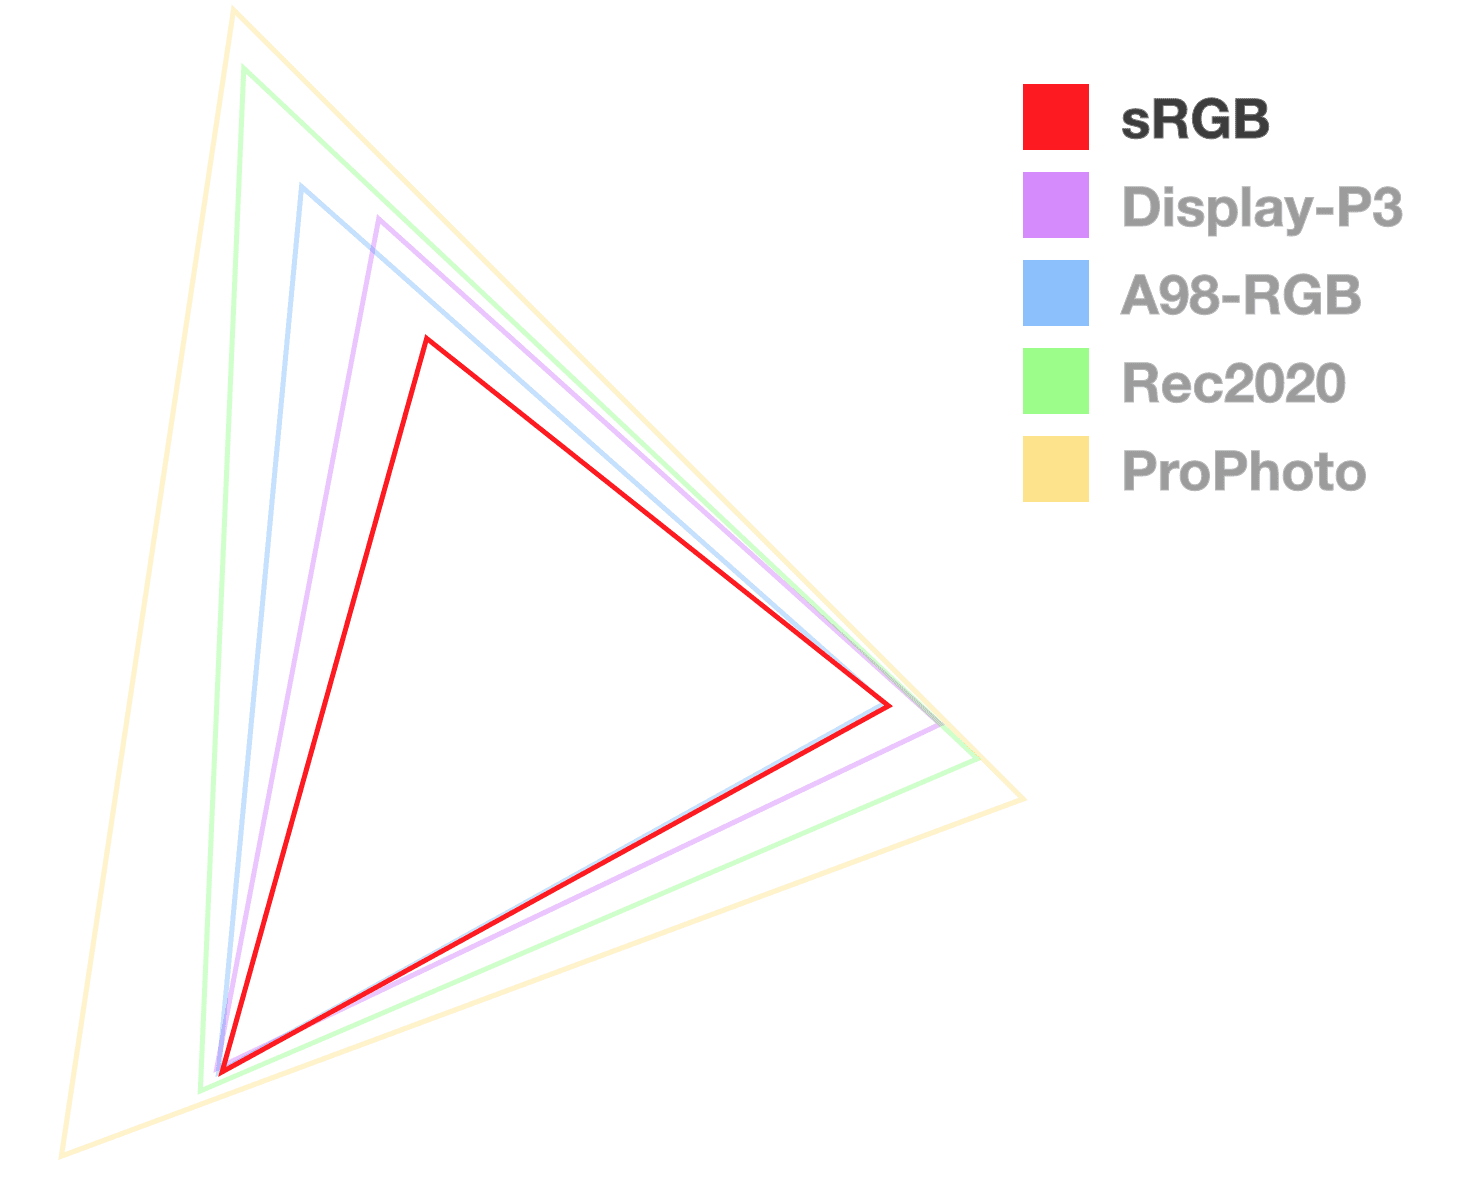 sRGB 삼각형은 유일하게 완전히 불투명한 삼각형으로, 색 영역의 크기를 시각화하는 데 도움이 됩니다.